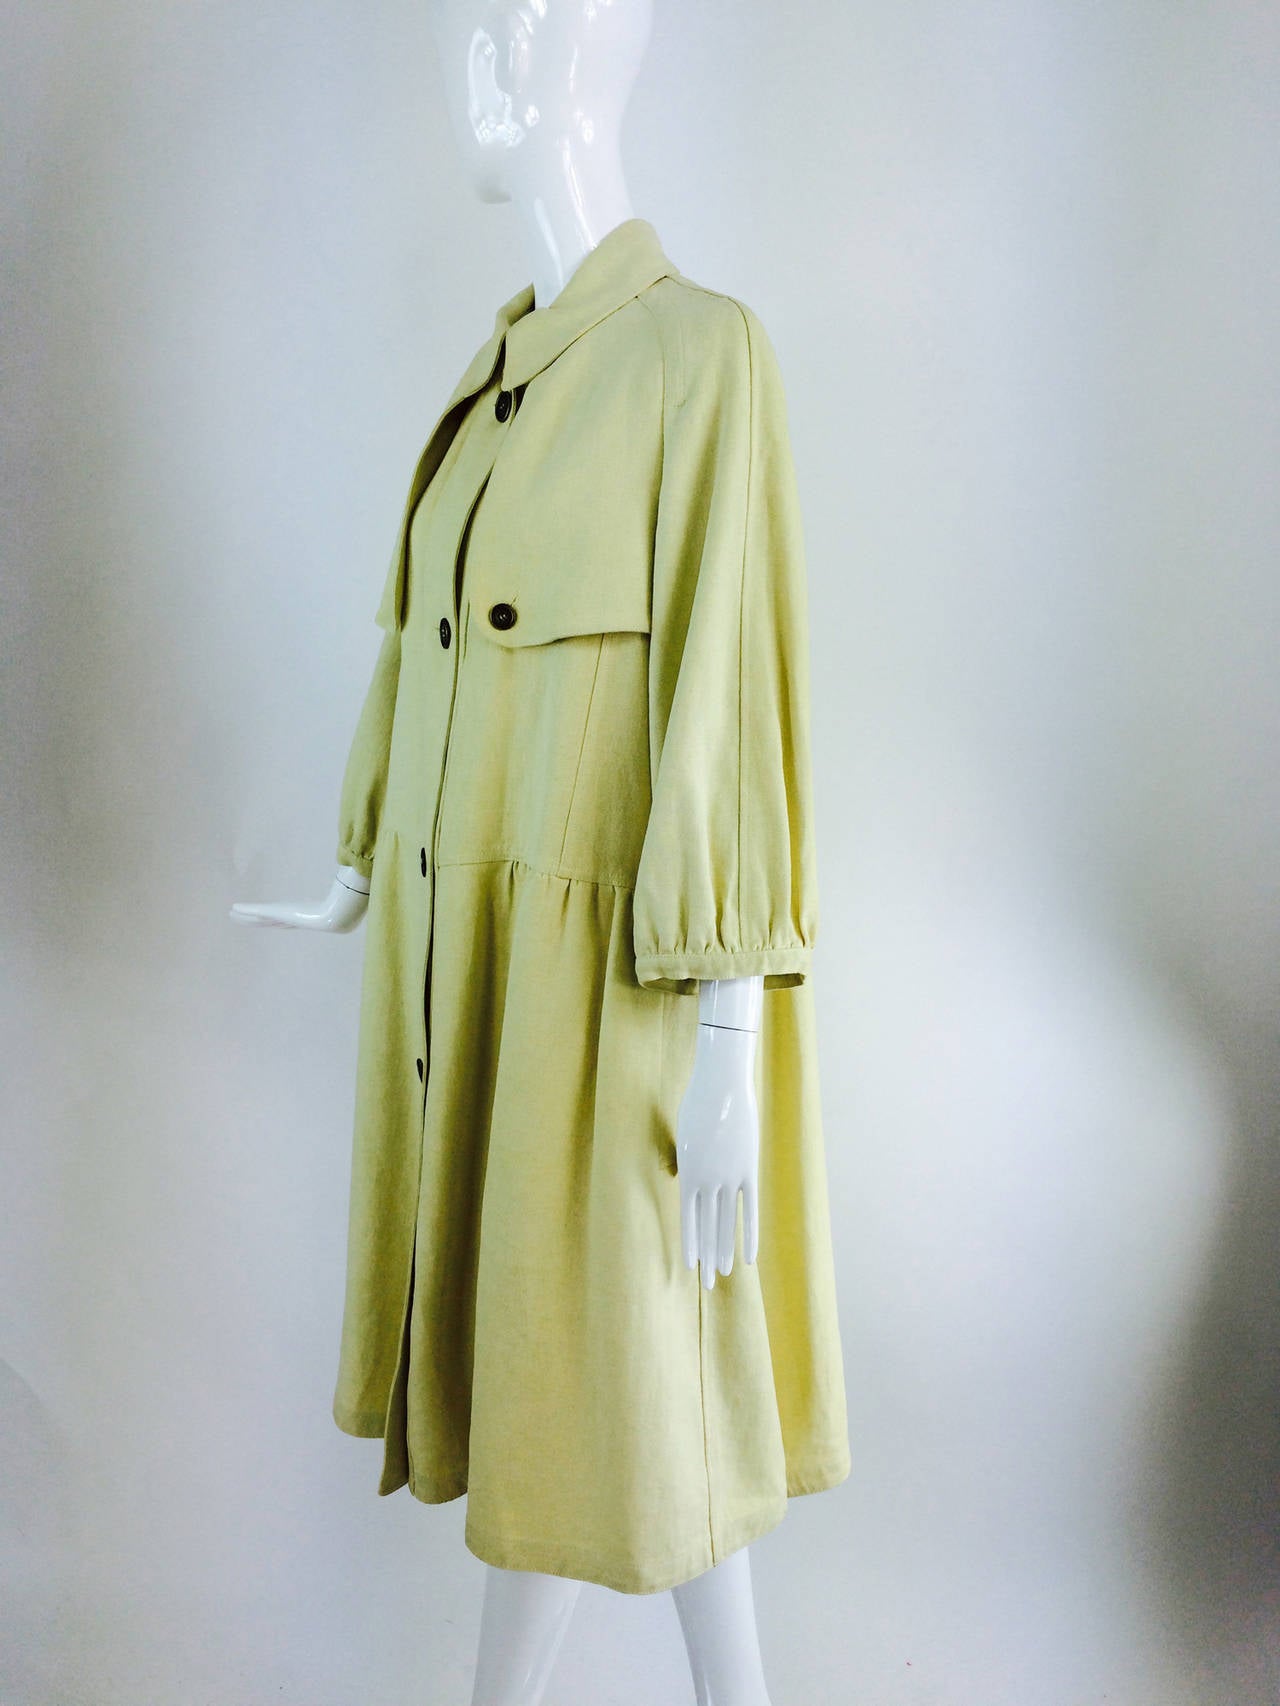 Burberry butter yellow hemp coat dress 2005 4